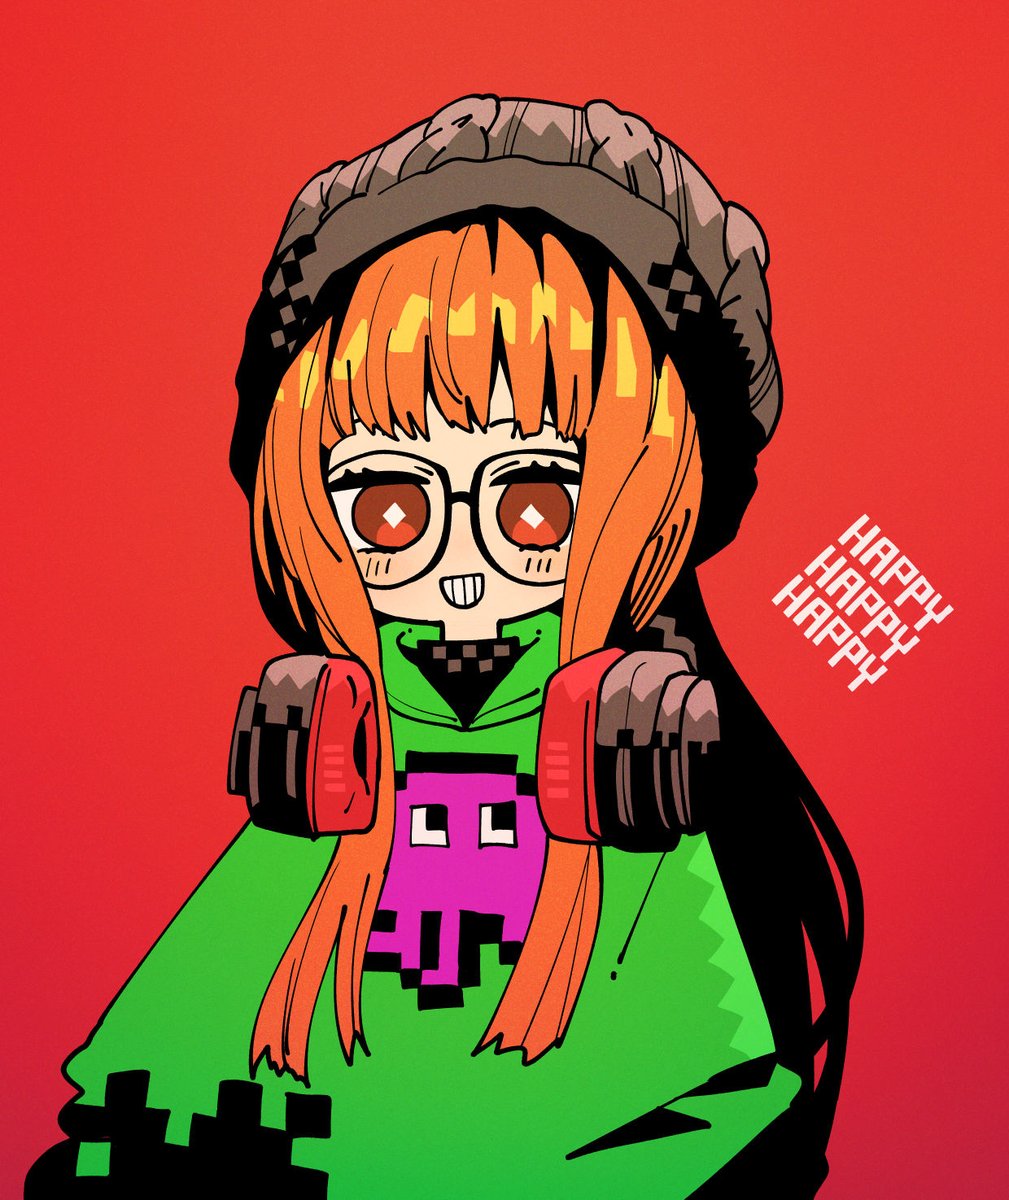 sakura futaba 1girl headphones long hair glasses orange hair smile red background  illustration images